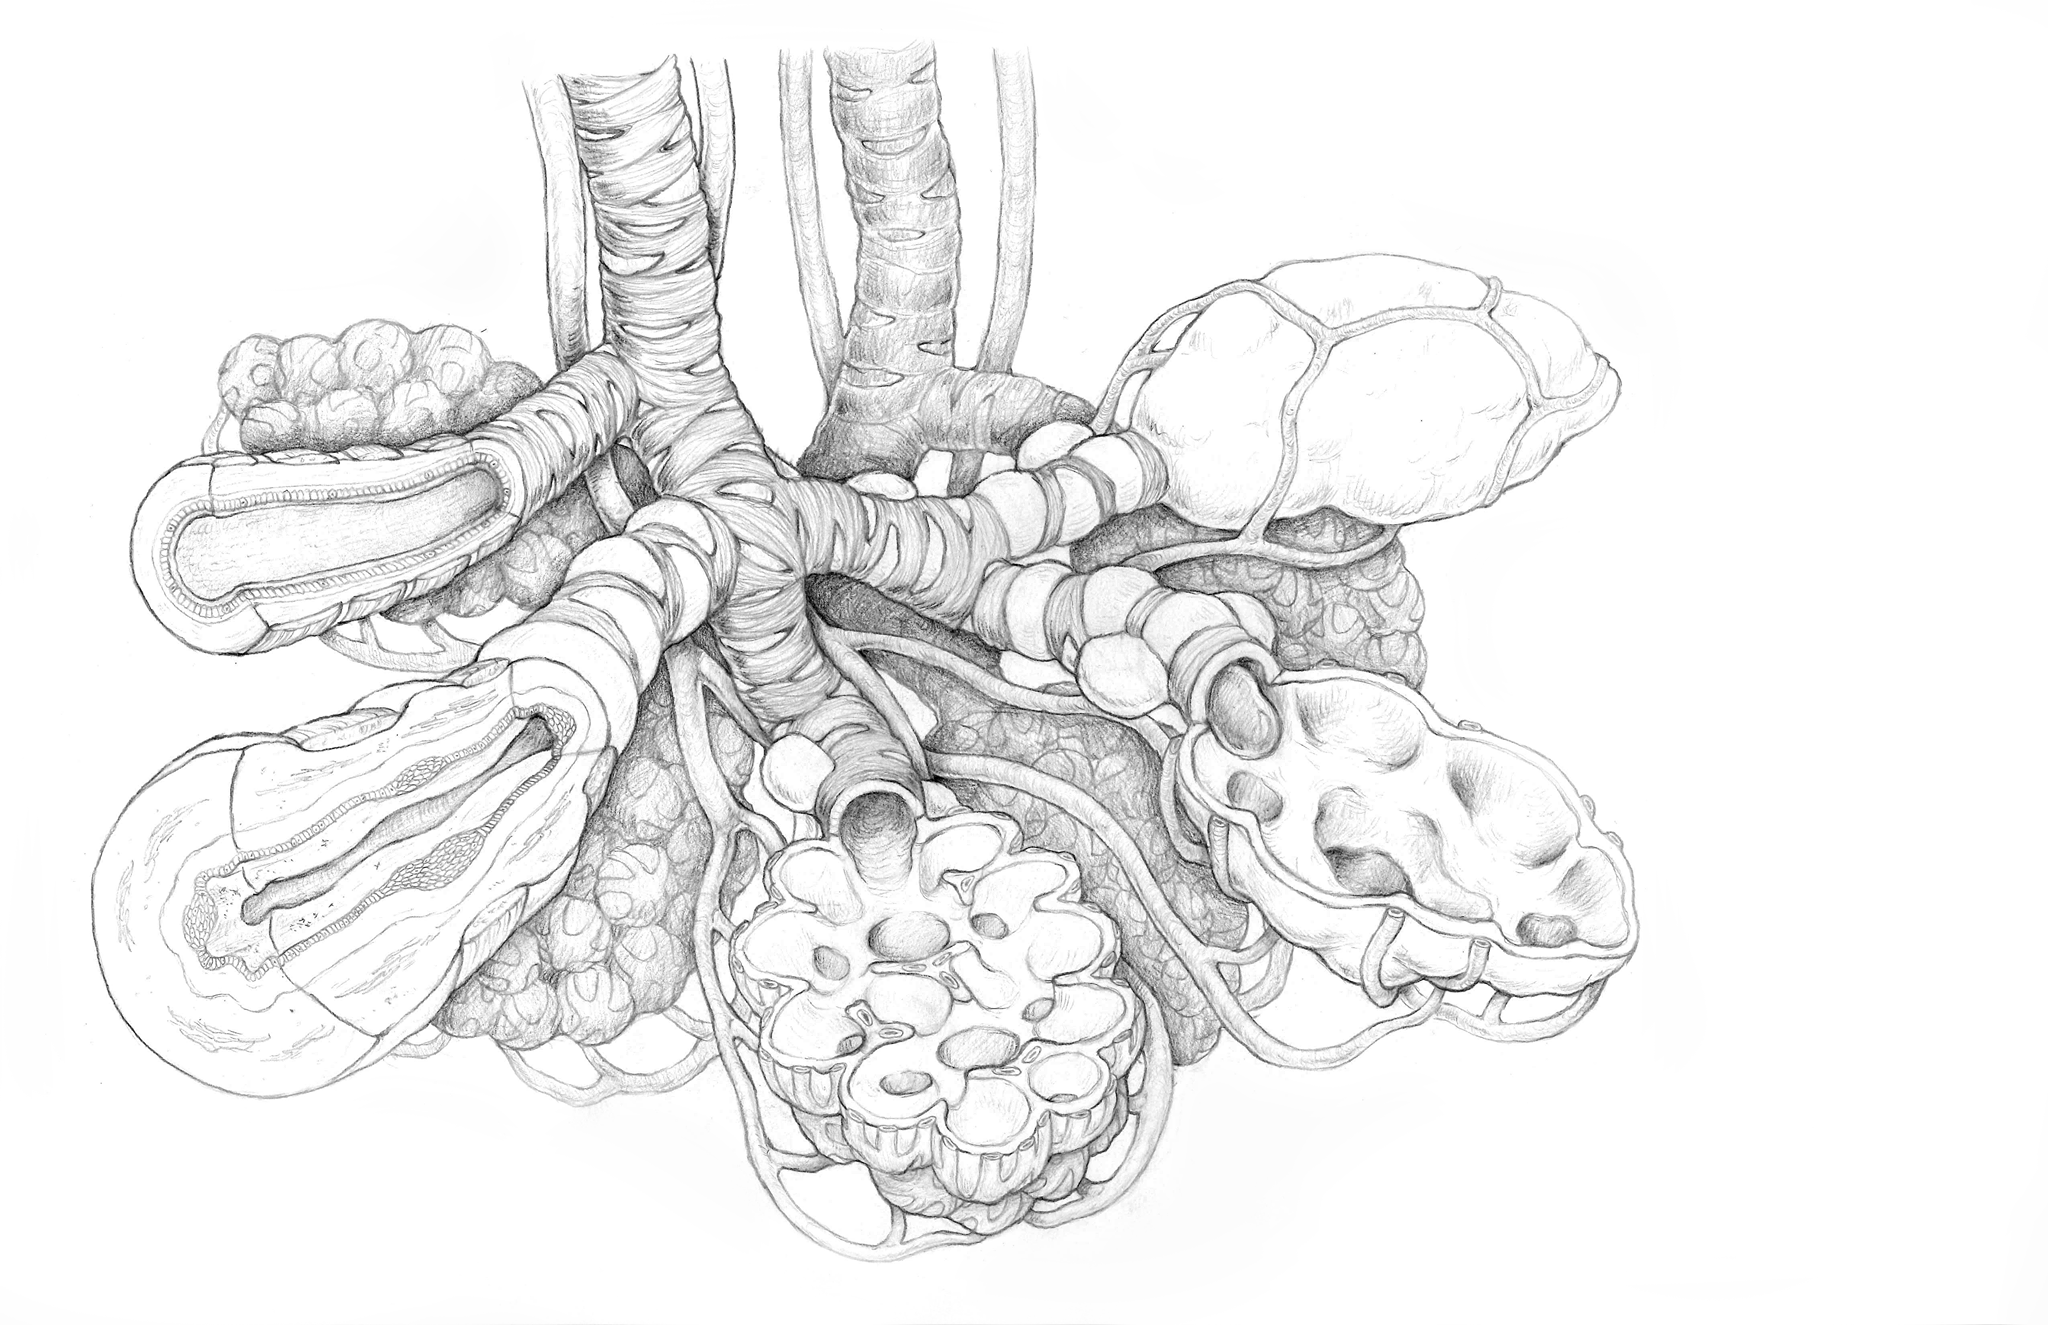 final COPD sketch